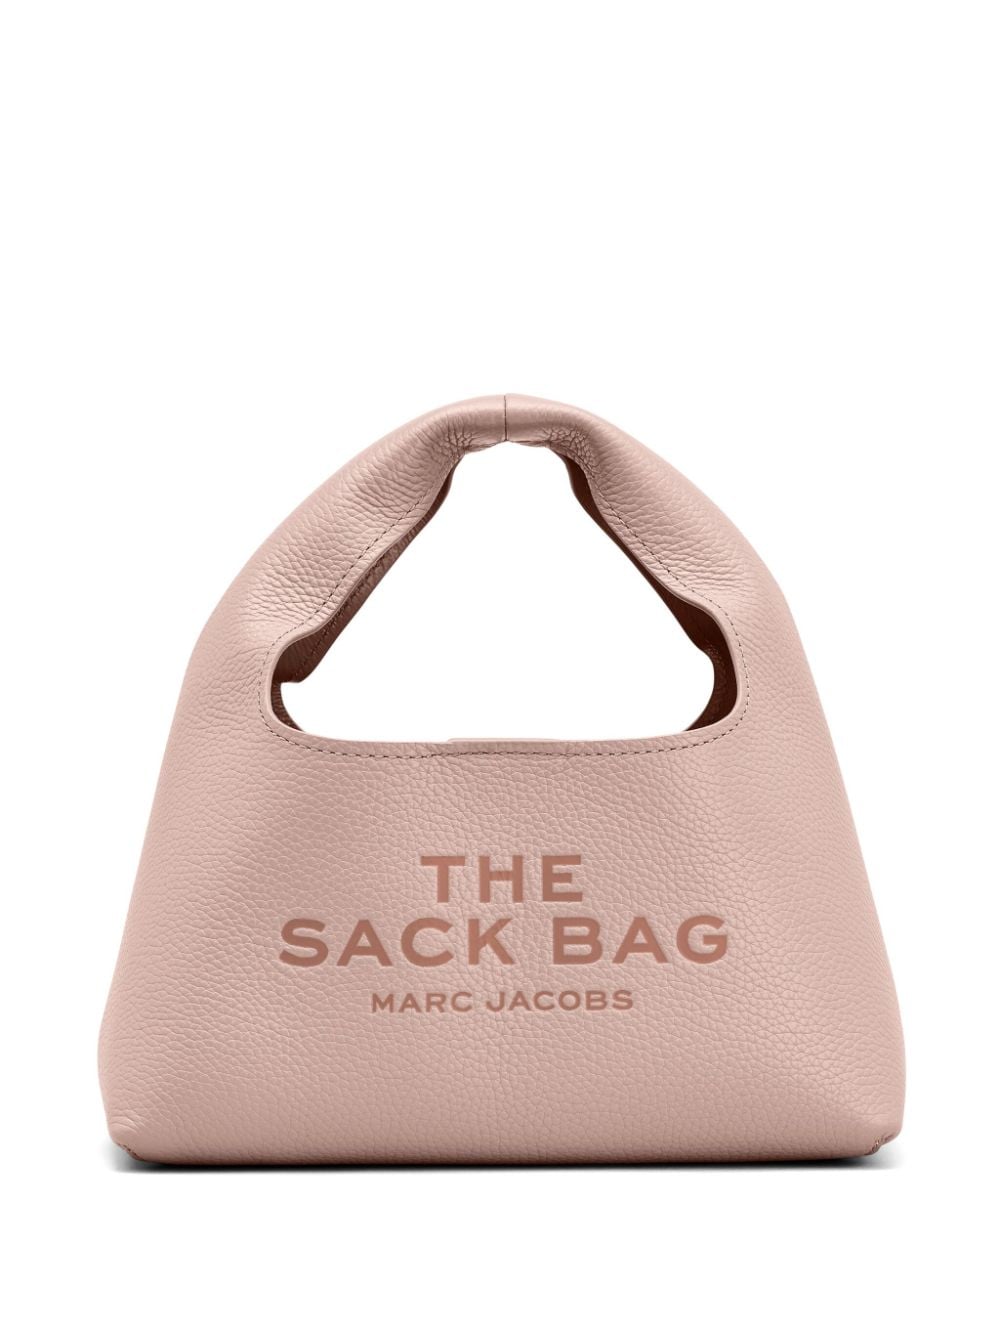 The Mini Sack leather tote bag